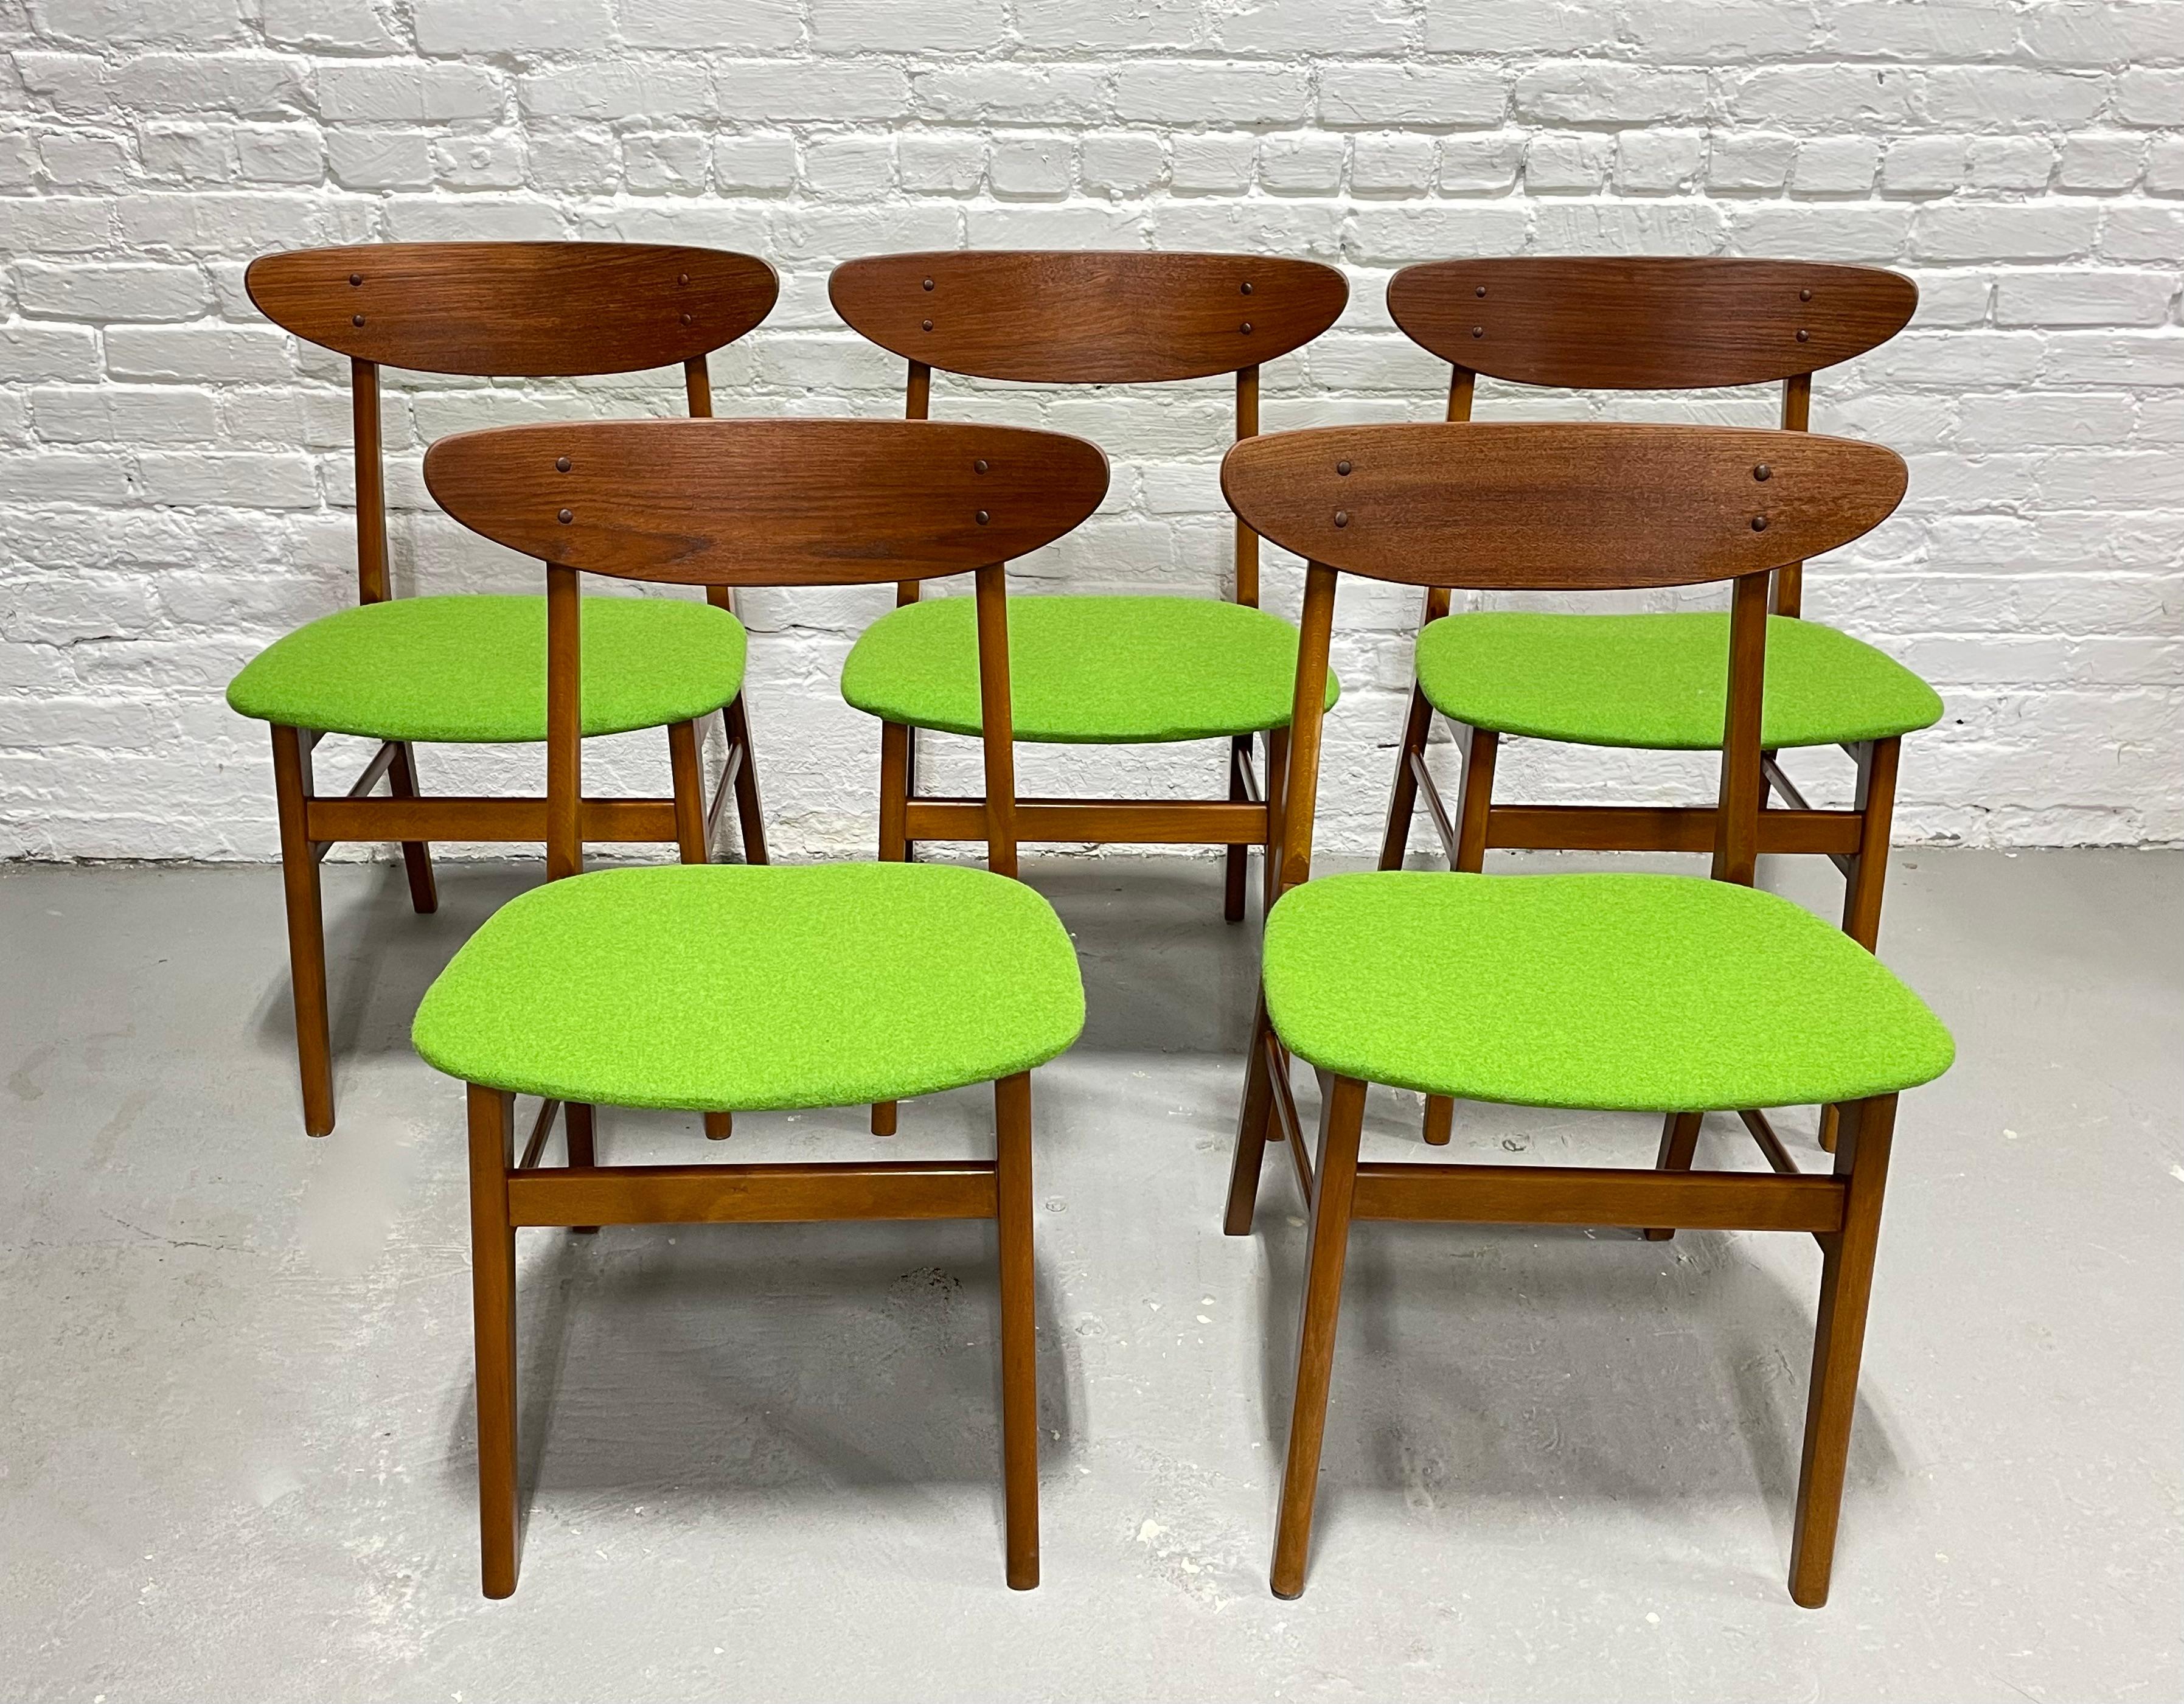 Ensemble de cinq chaises de salle à manger danoises en teck du milieu du siècle par Farstrup Mobler, fabriquées au Danemark, vers les années 1960.  Ces chaises sont remarquables sous tous les angles, du dossier incurvé au revêtement en laine vert